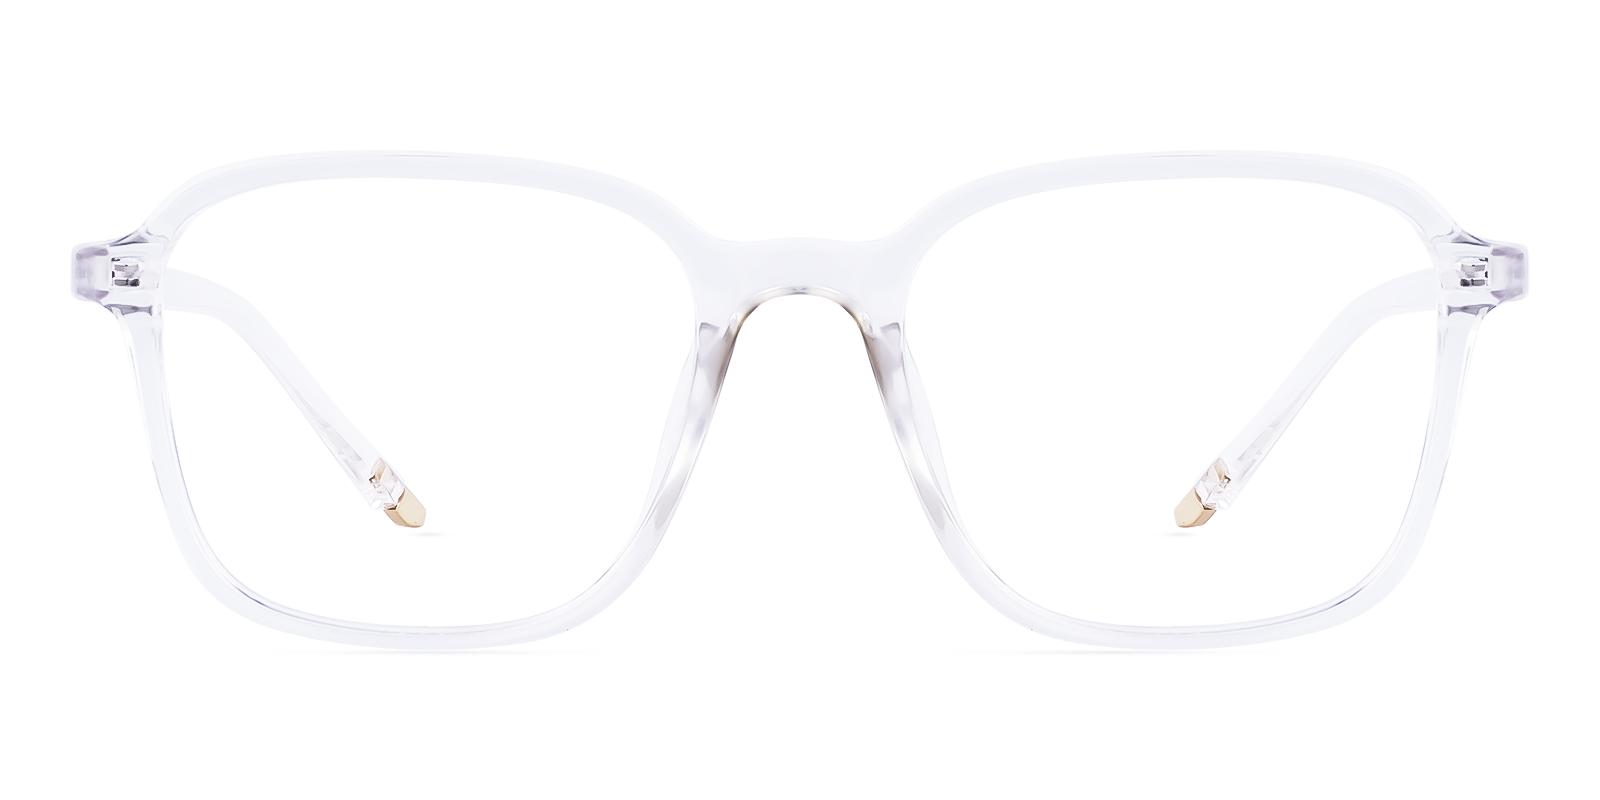 Restlike Fclear Plastic Eyeglasses , UniversalBridgeFit Frames from ABBE Glasses